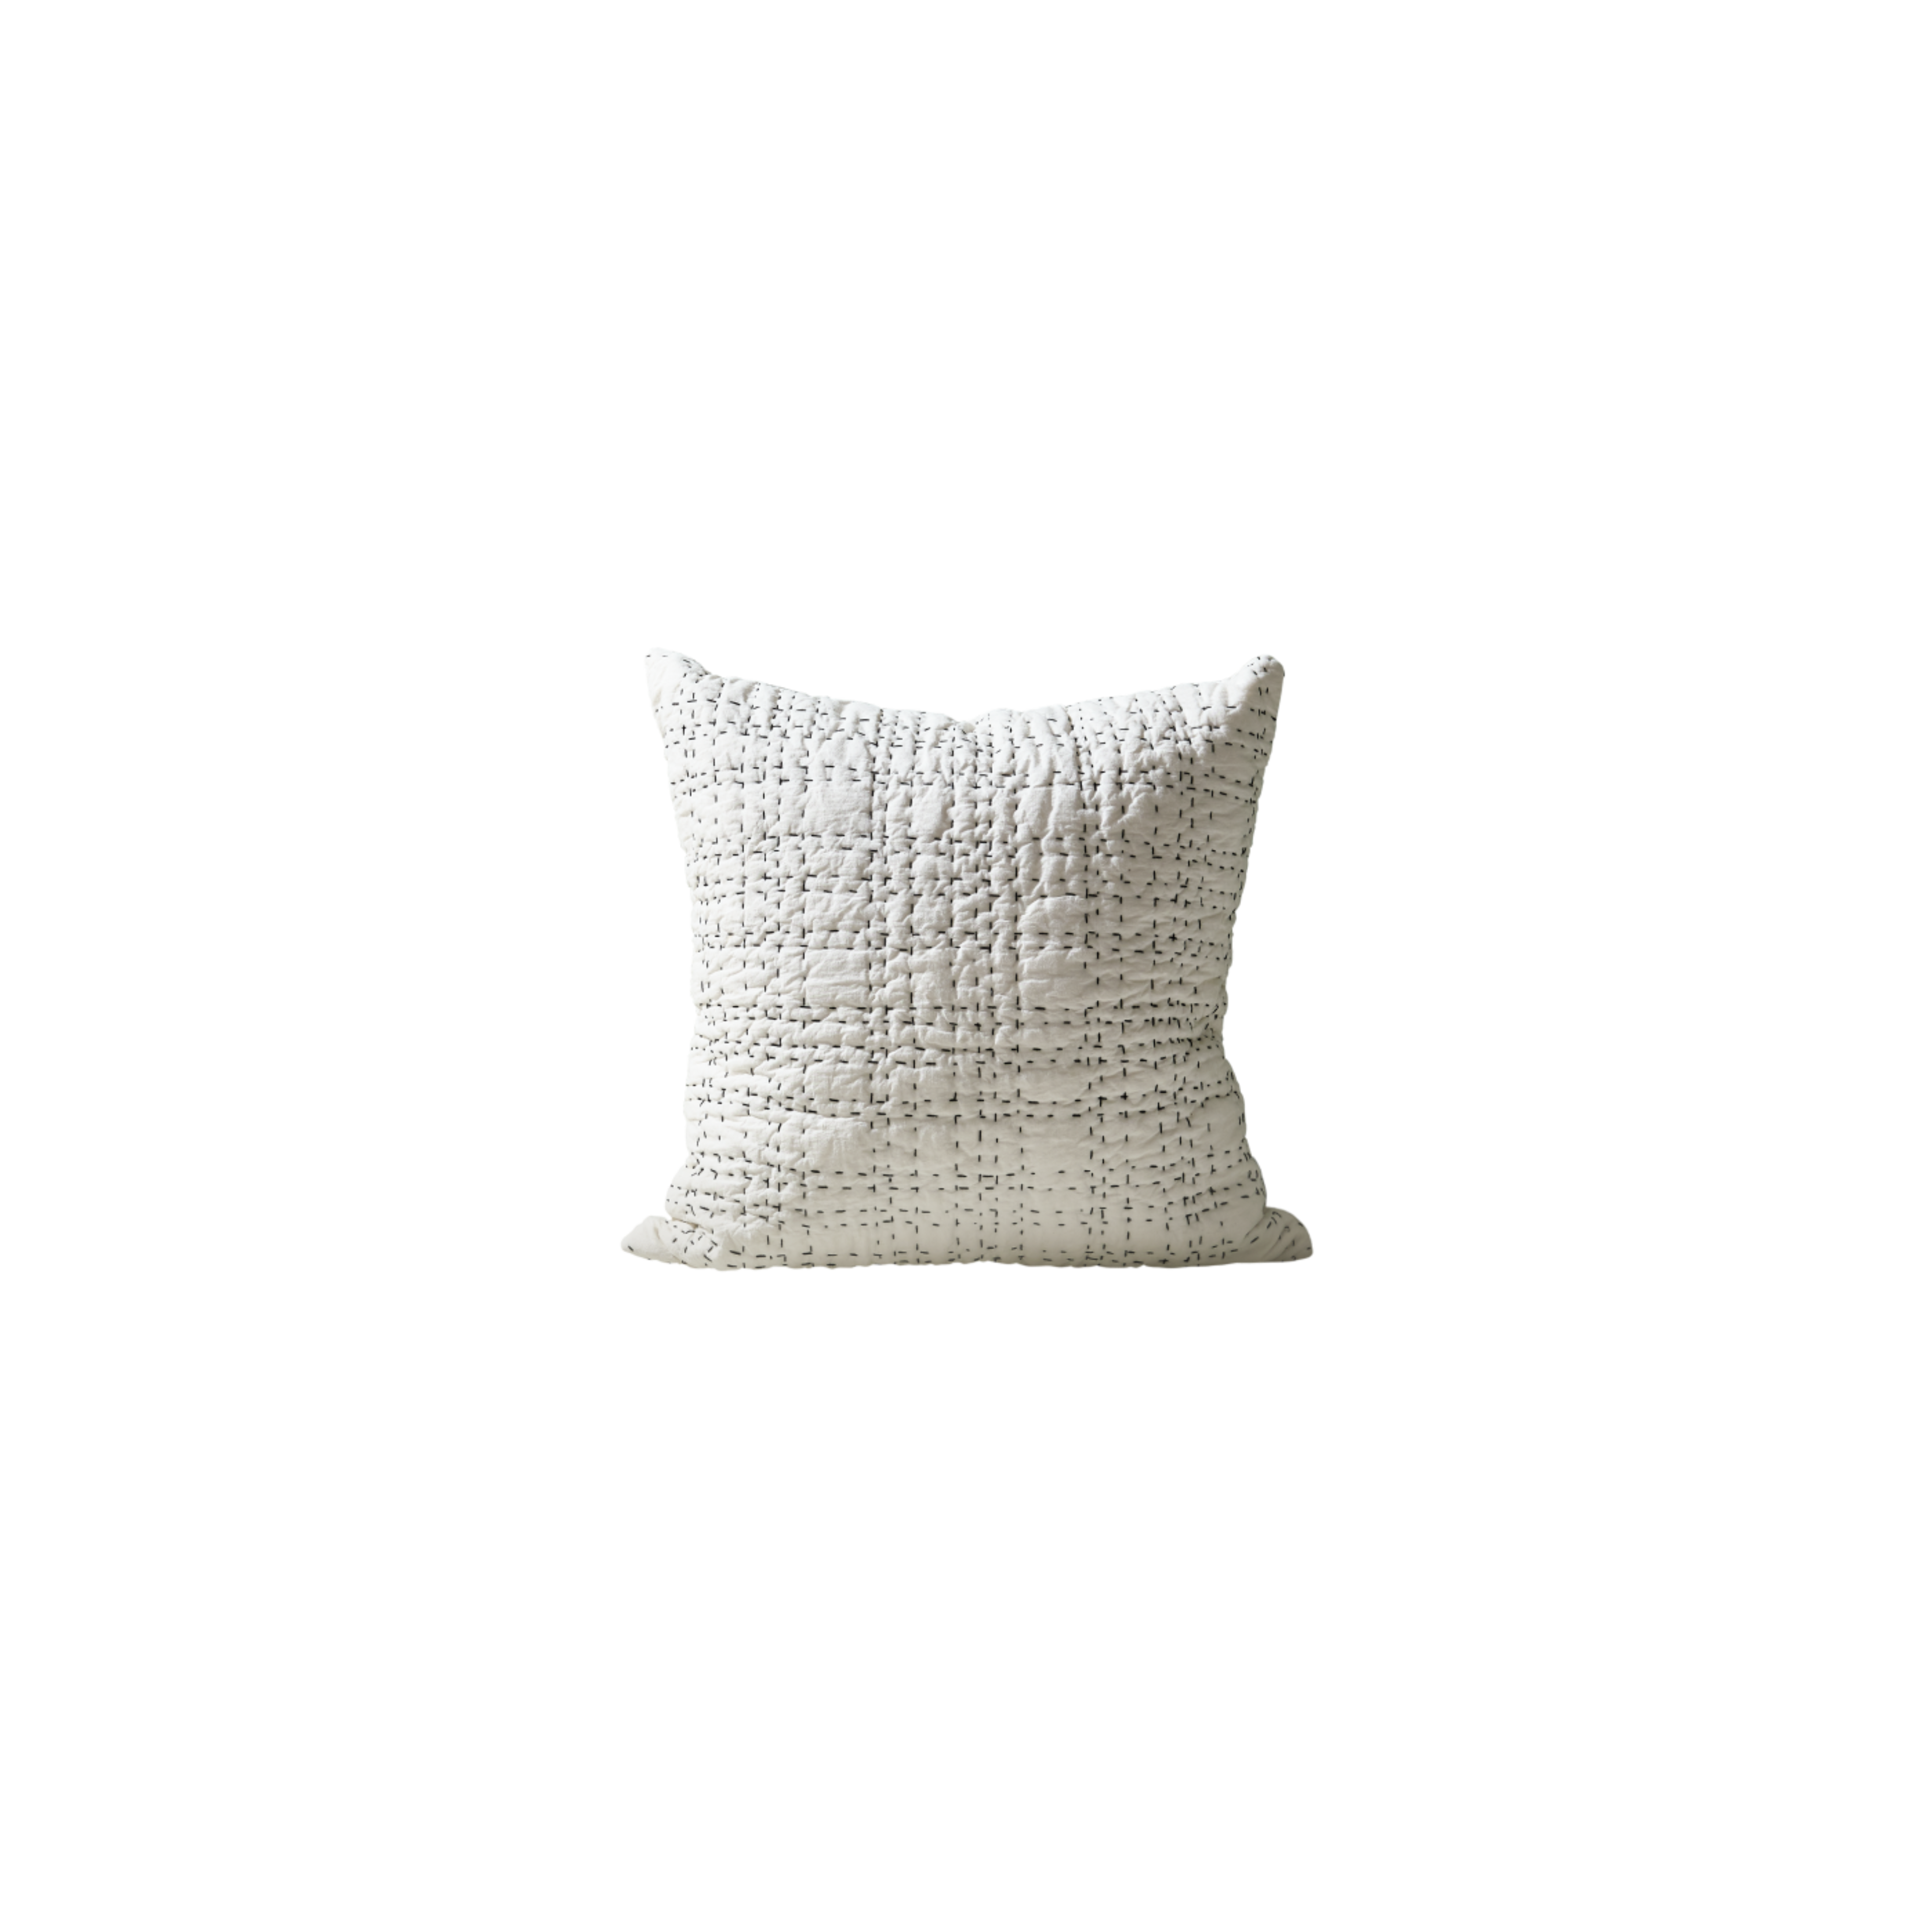 Product Clear BG Stitch Up Cushion 50 x 50cm Limestone